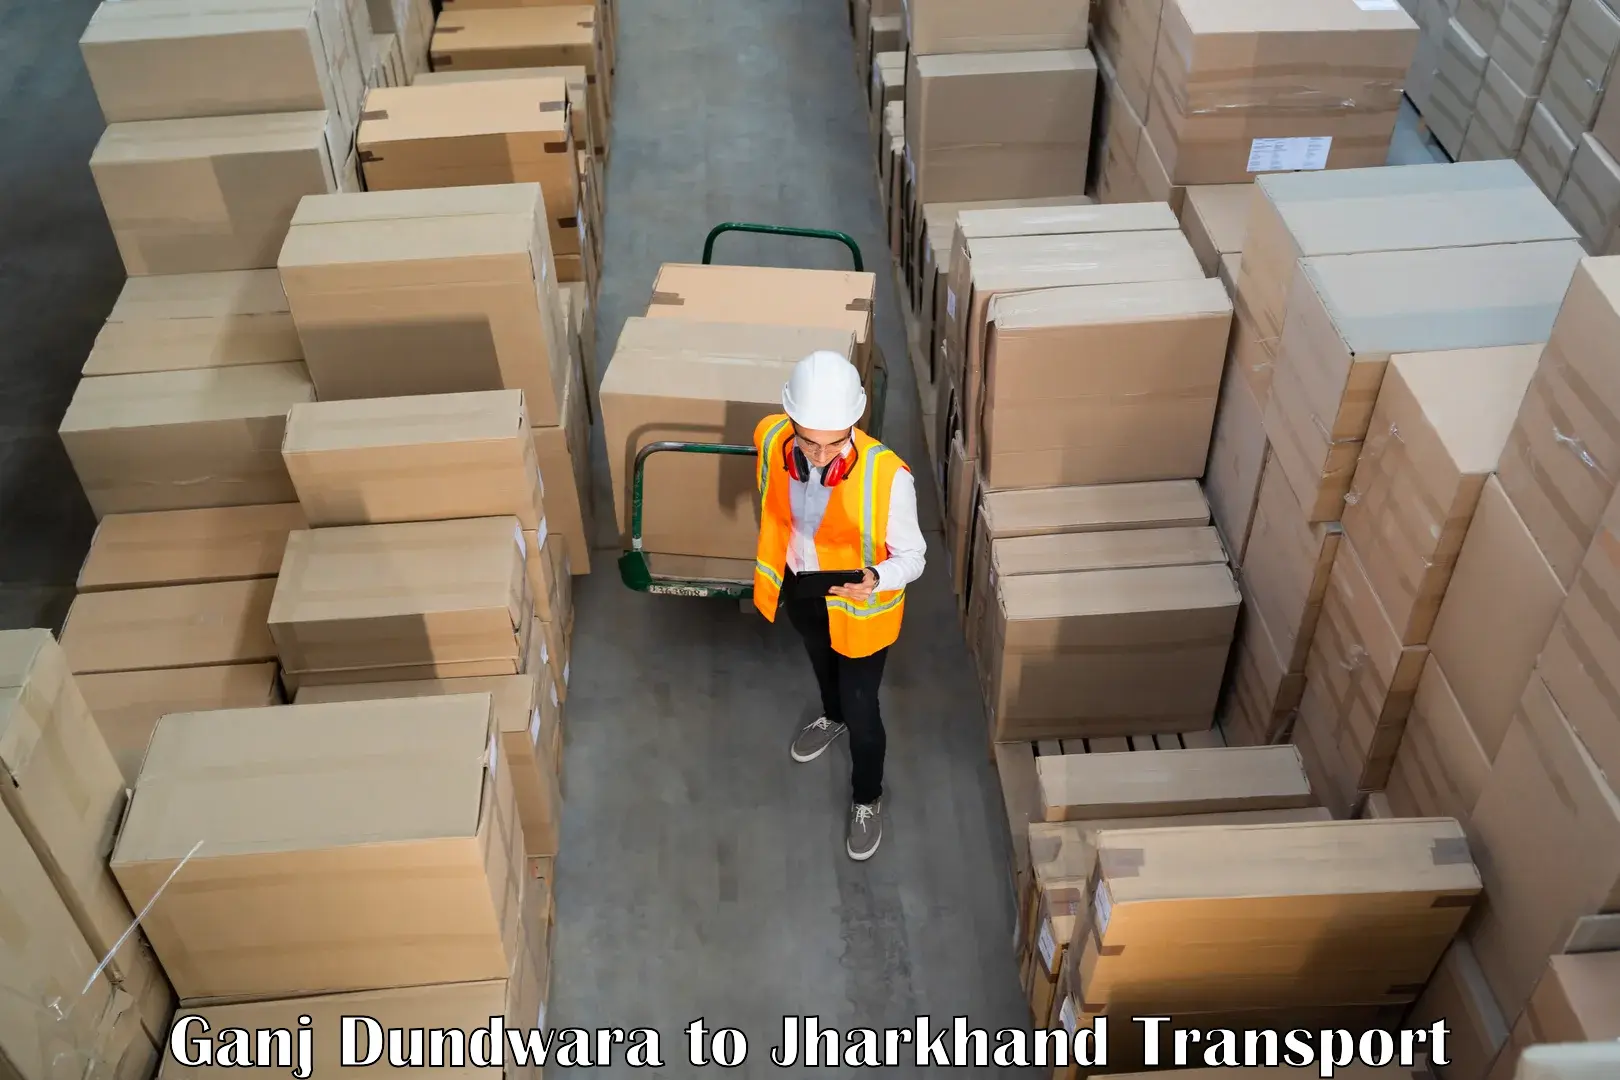 Pick up transport service Ganj Dundwara to Bokaro Steel City